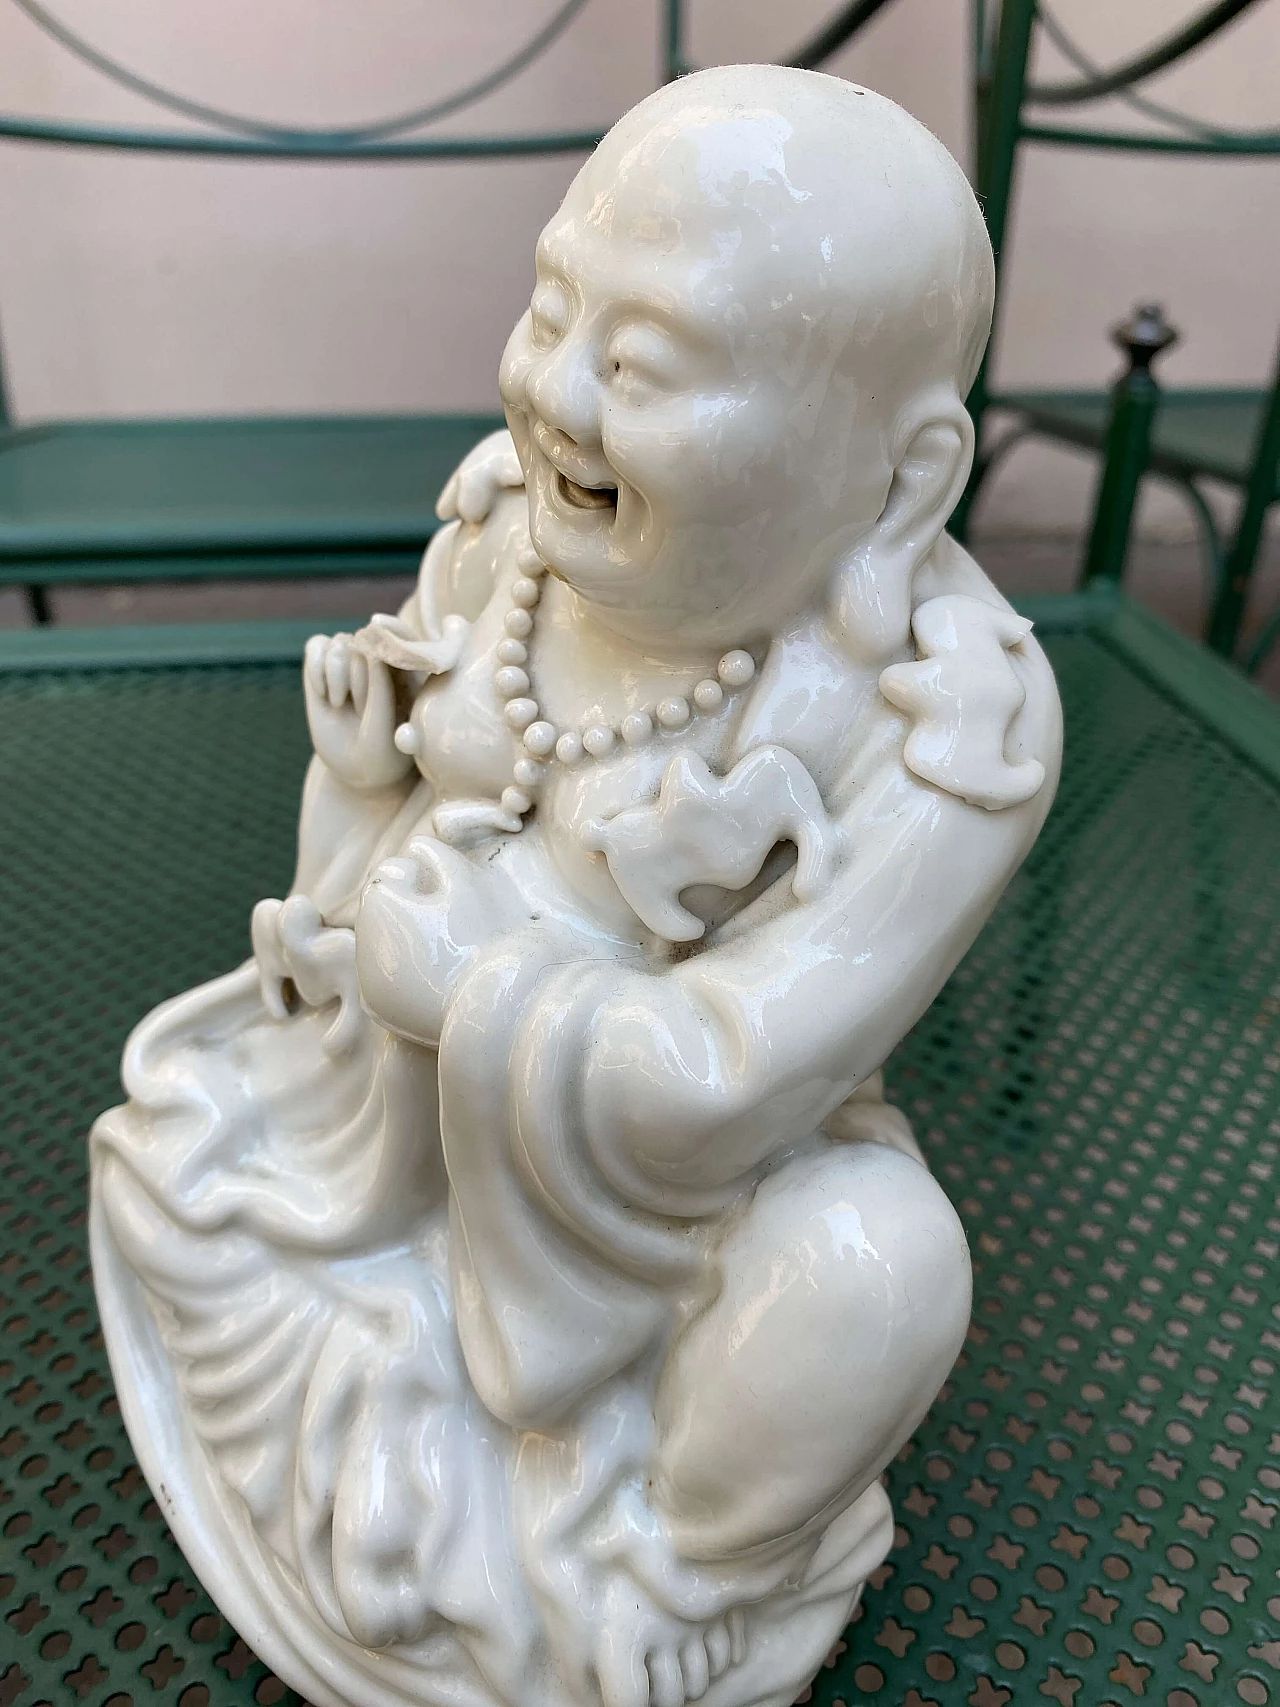 Chinese ceramic Buddha, 18th century 1253790